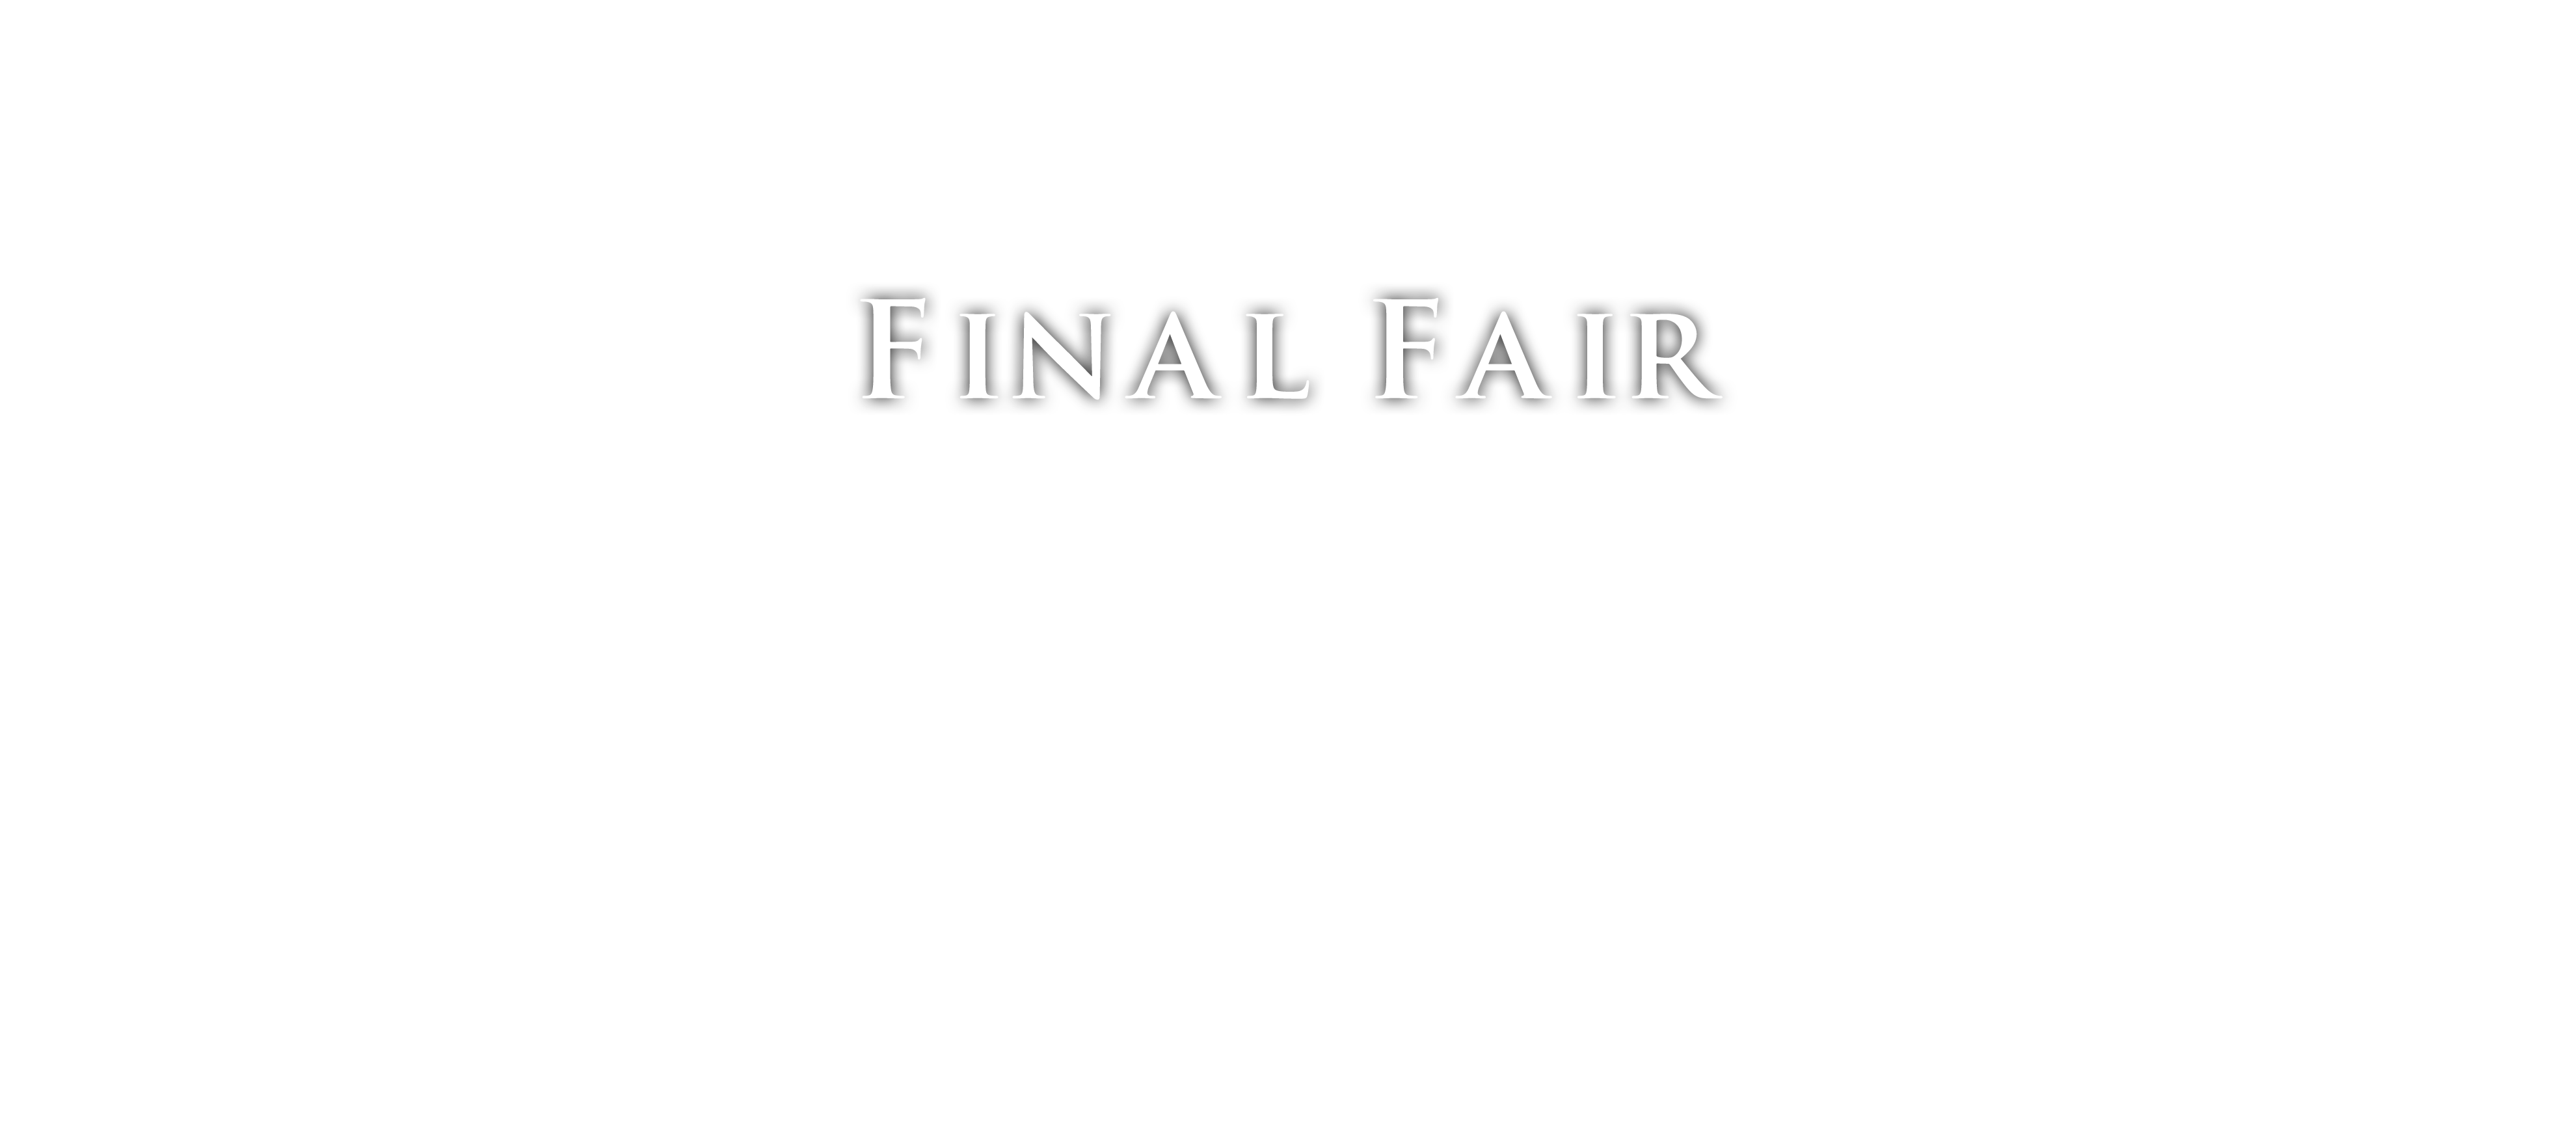 Final Fair